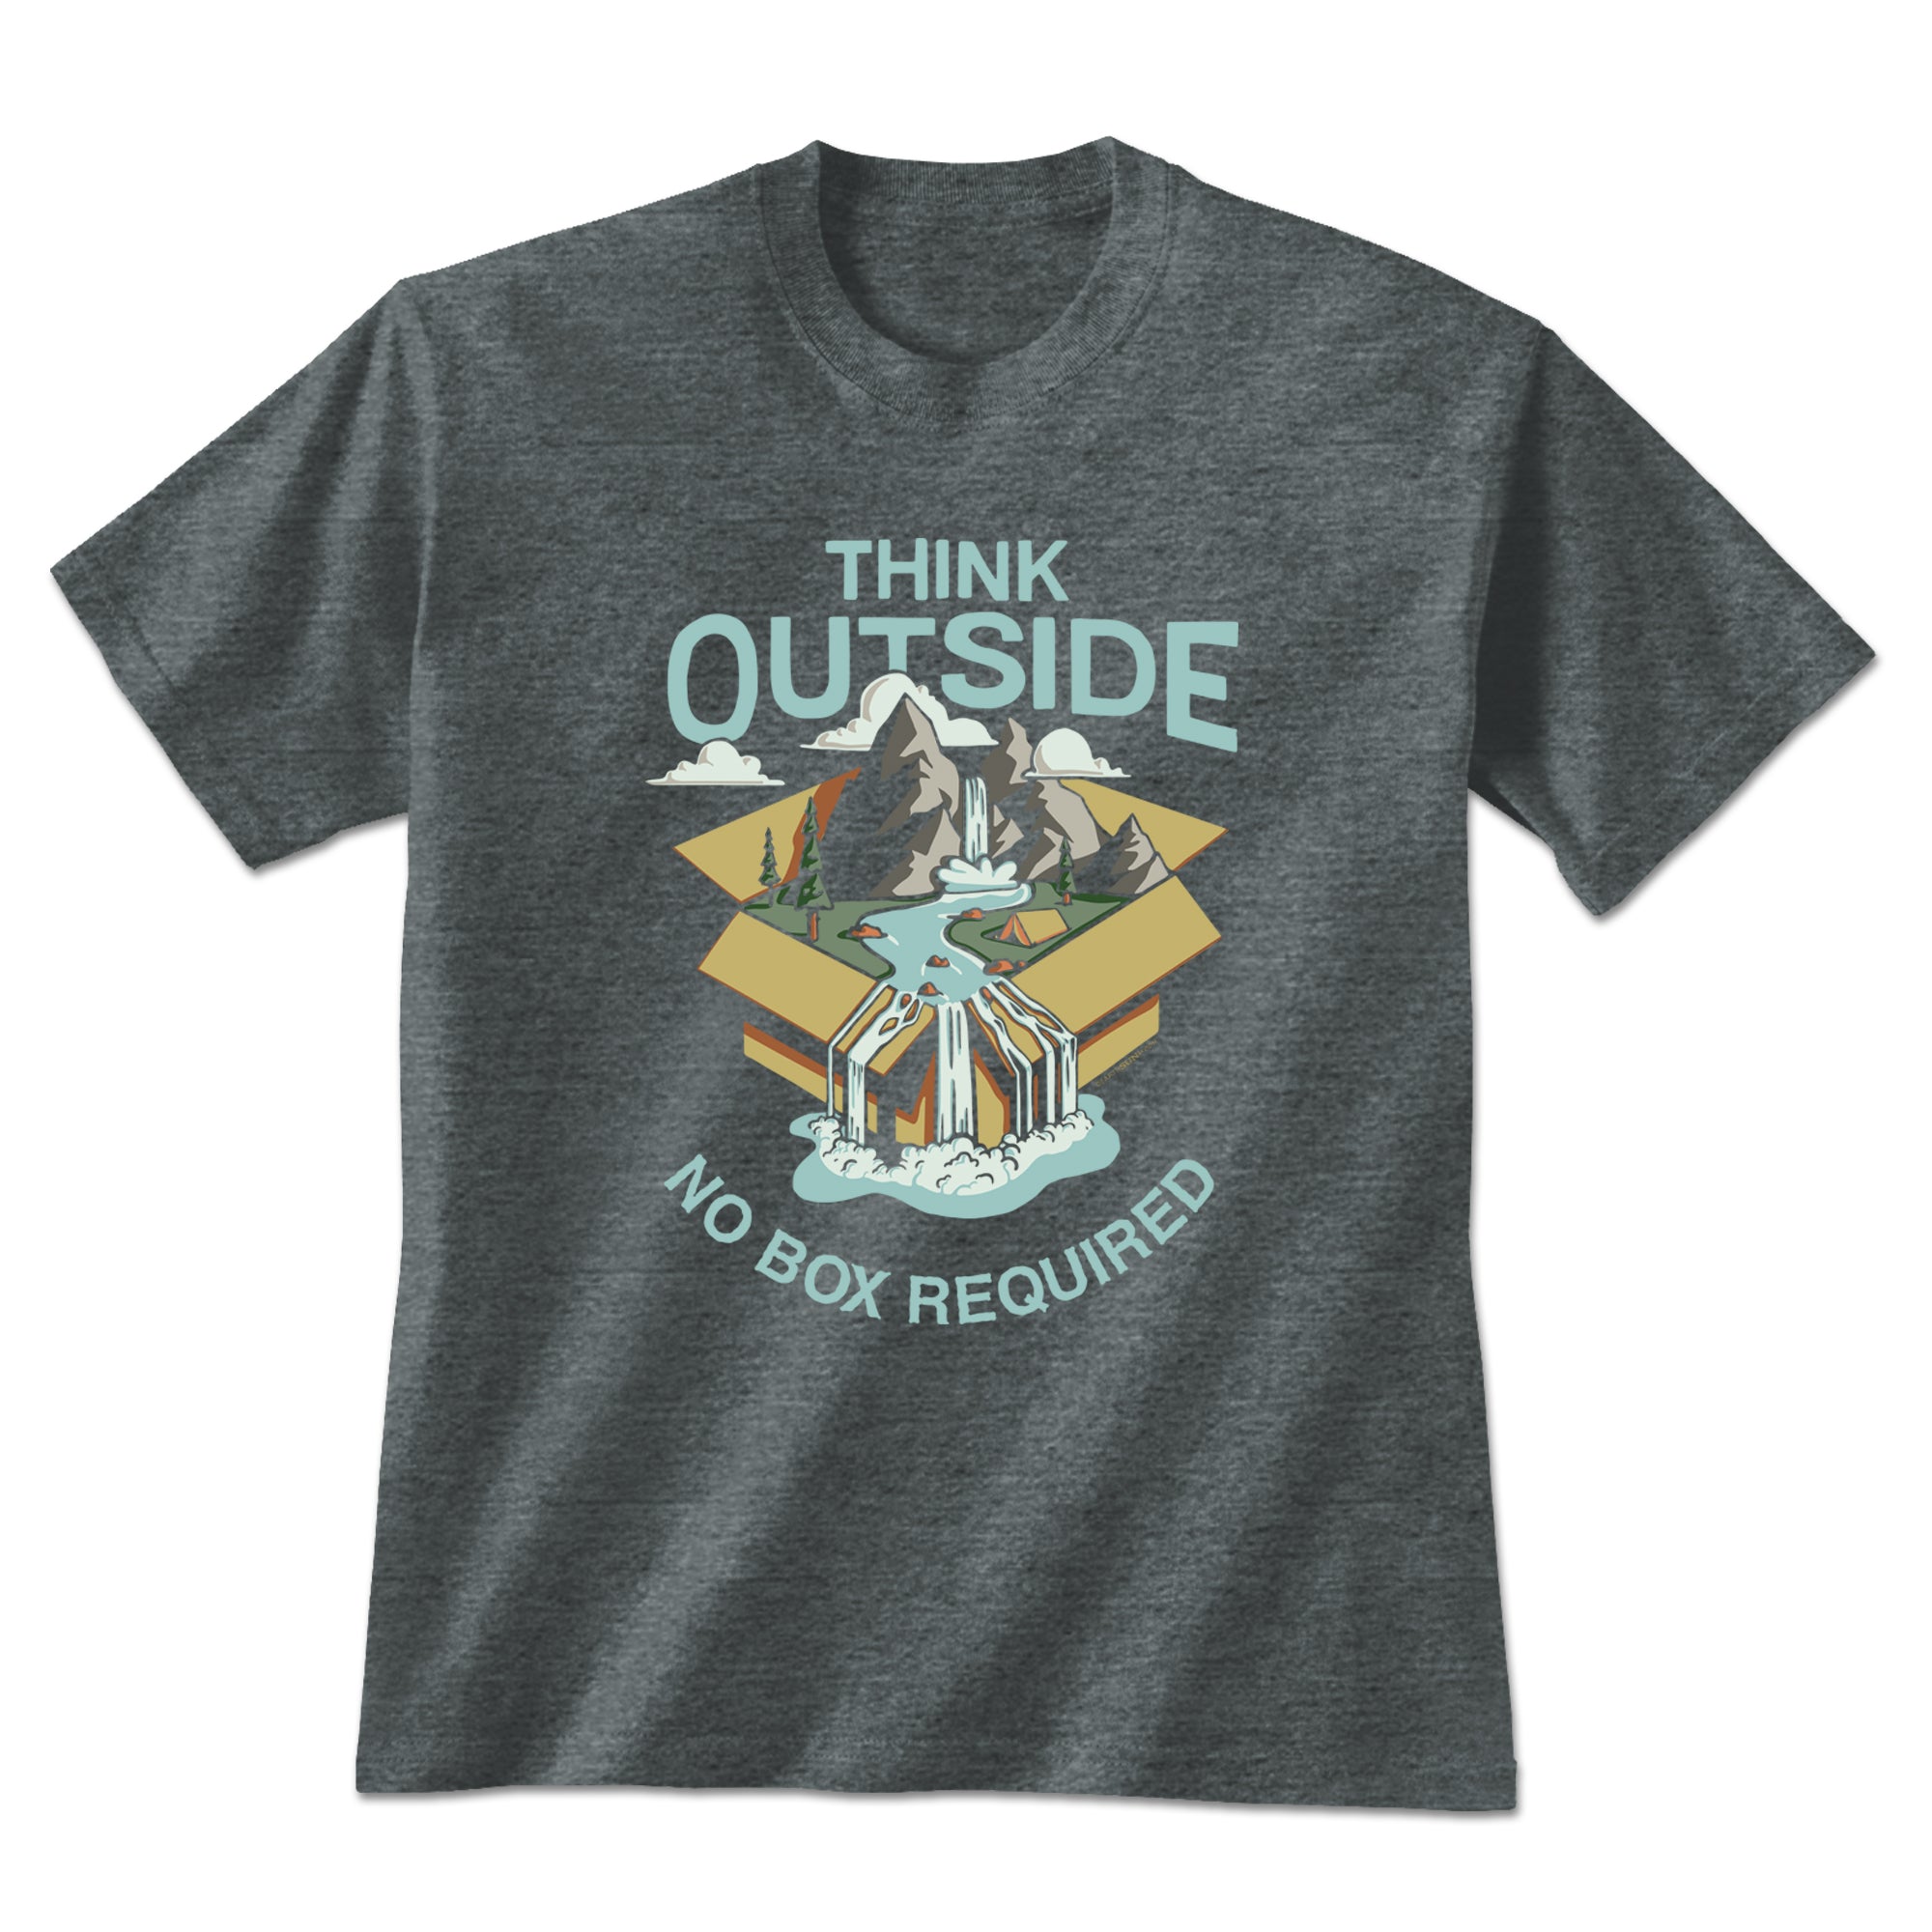 Think Outside - Wild T-Shirt - Dark Heather - XL